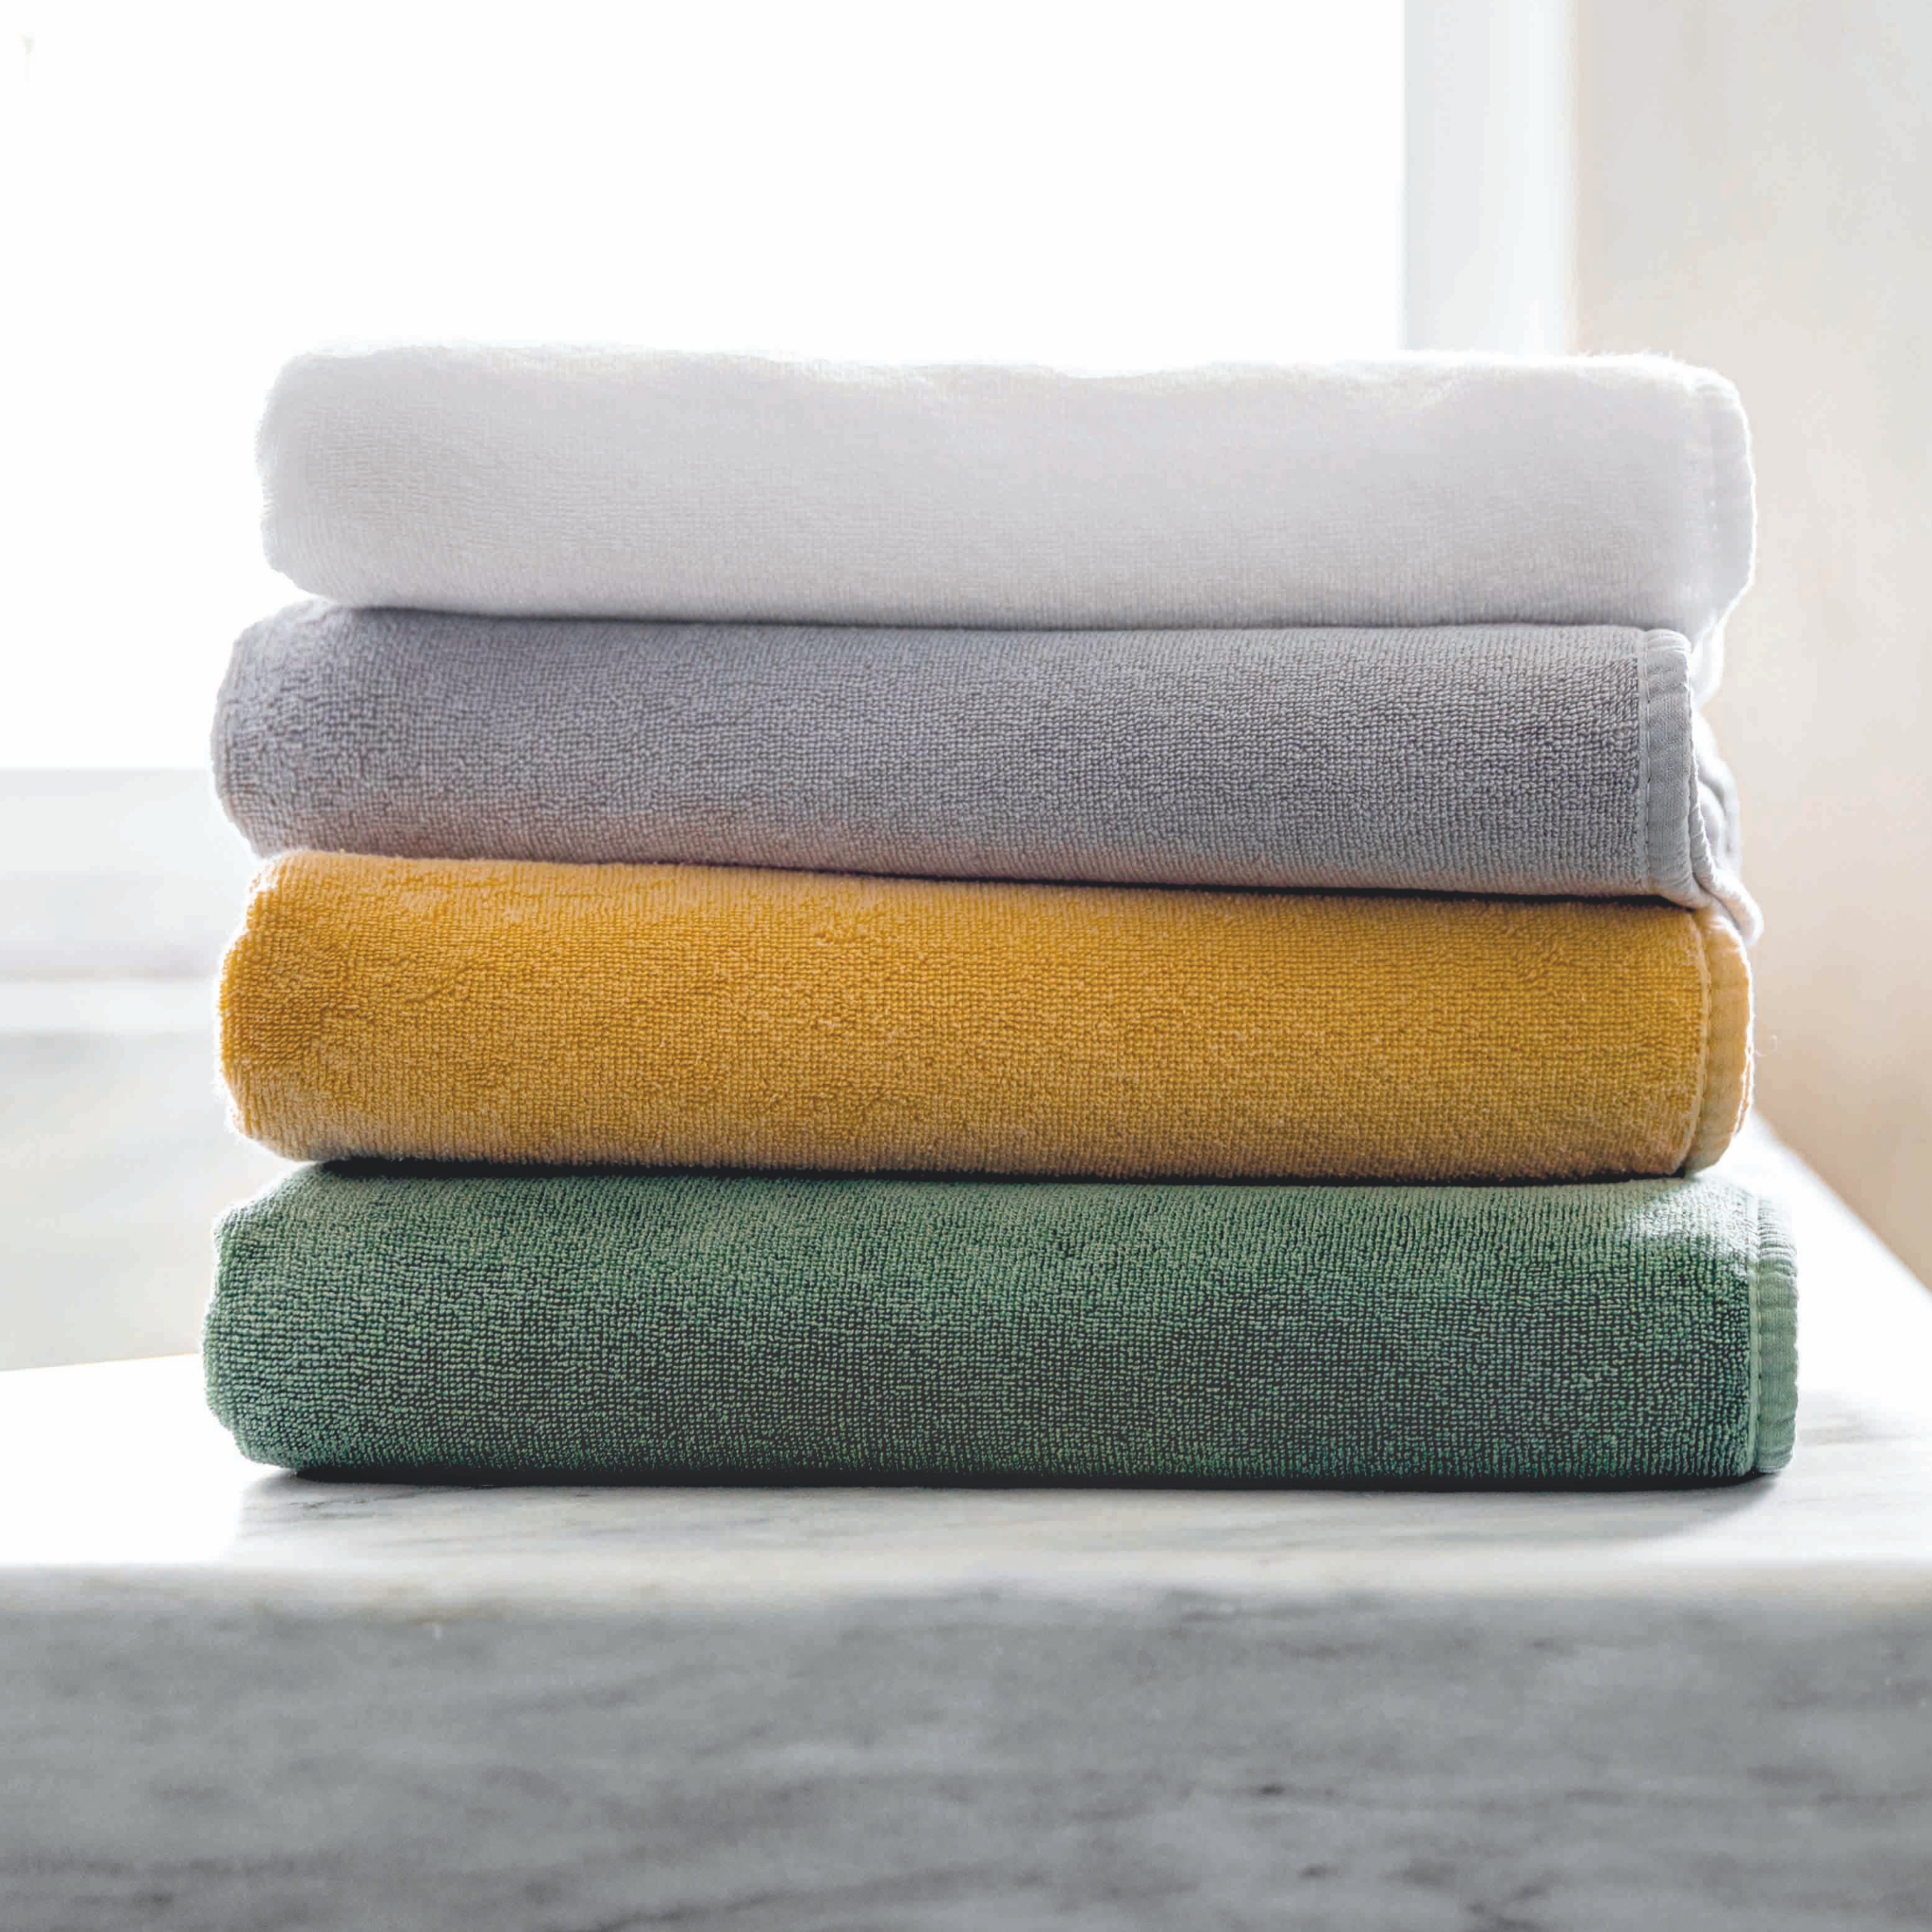 https://flandb.com/cdn/shop/products/Graccioza-Cool-Bath-Towels-All-Colors-Stack_2048x.png?v=1680926522